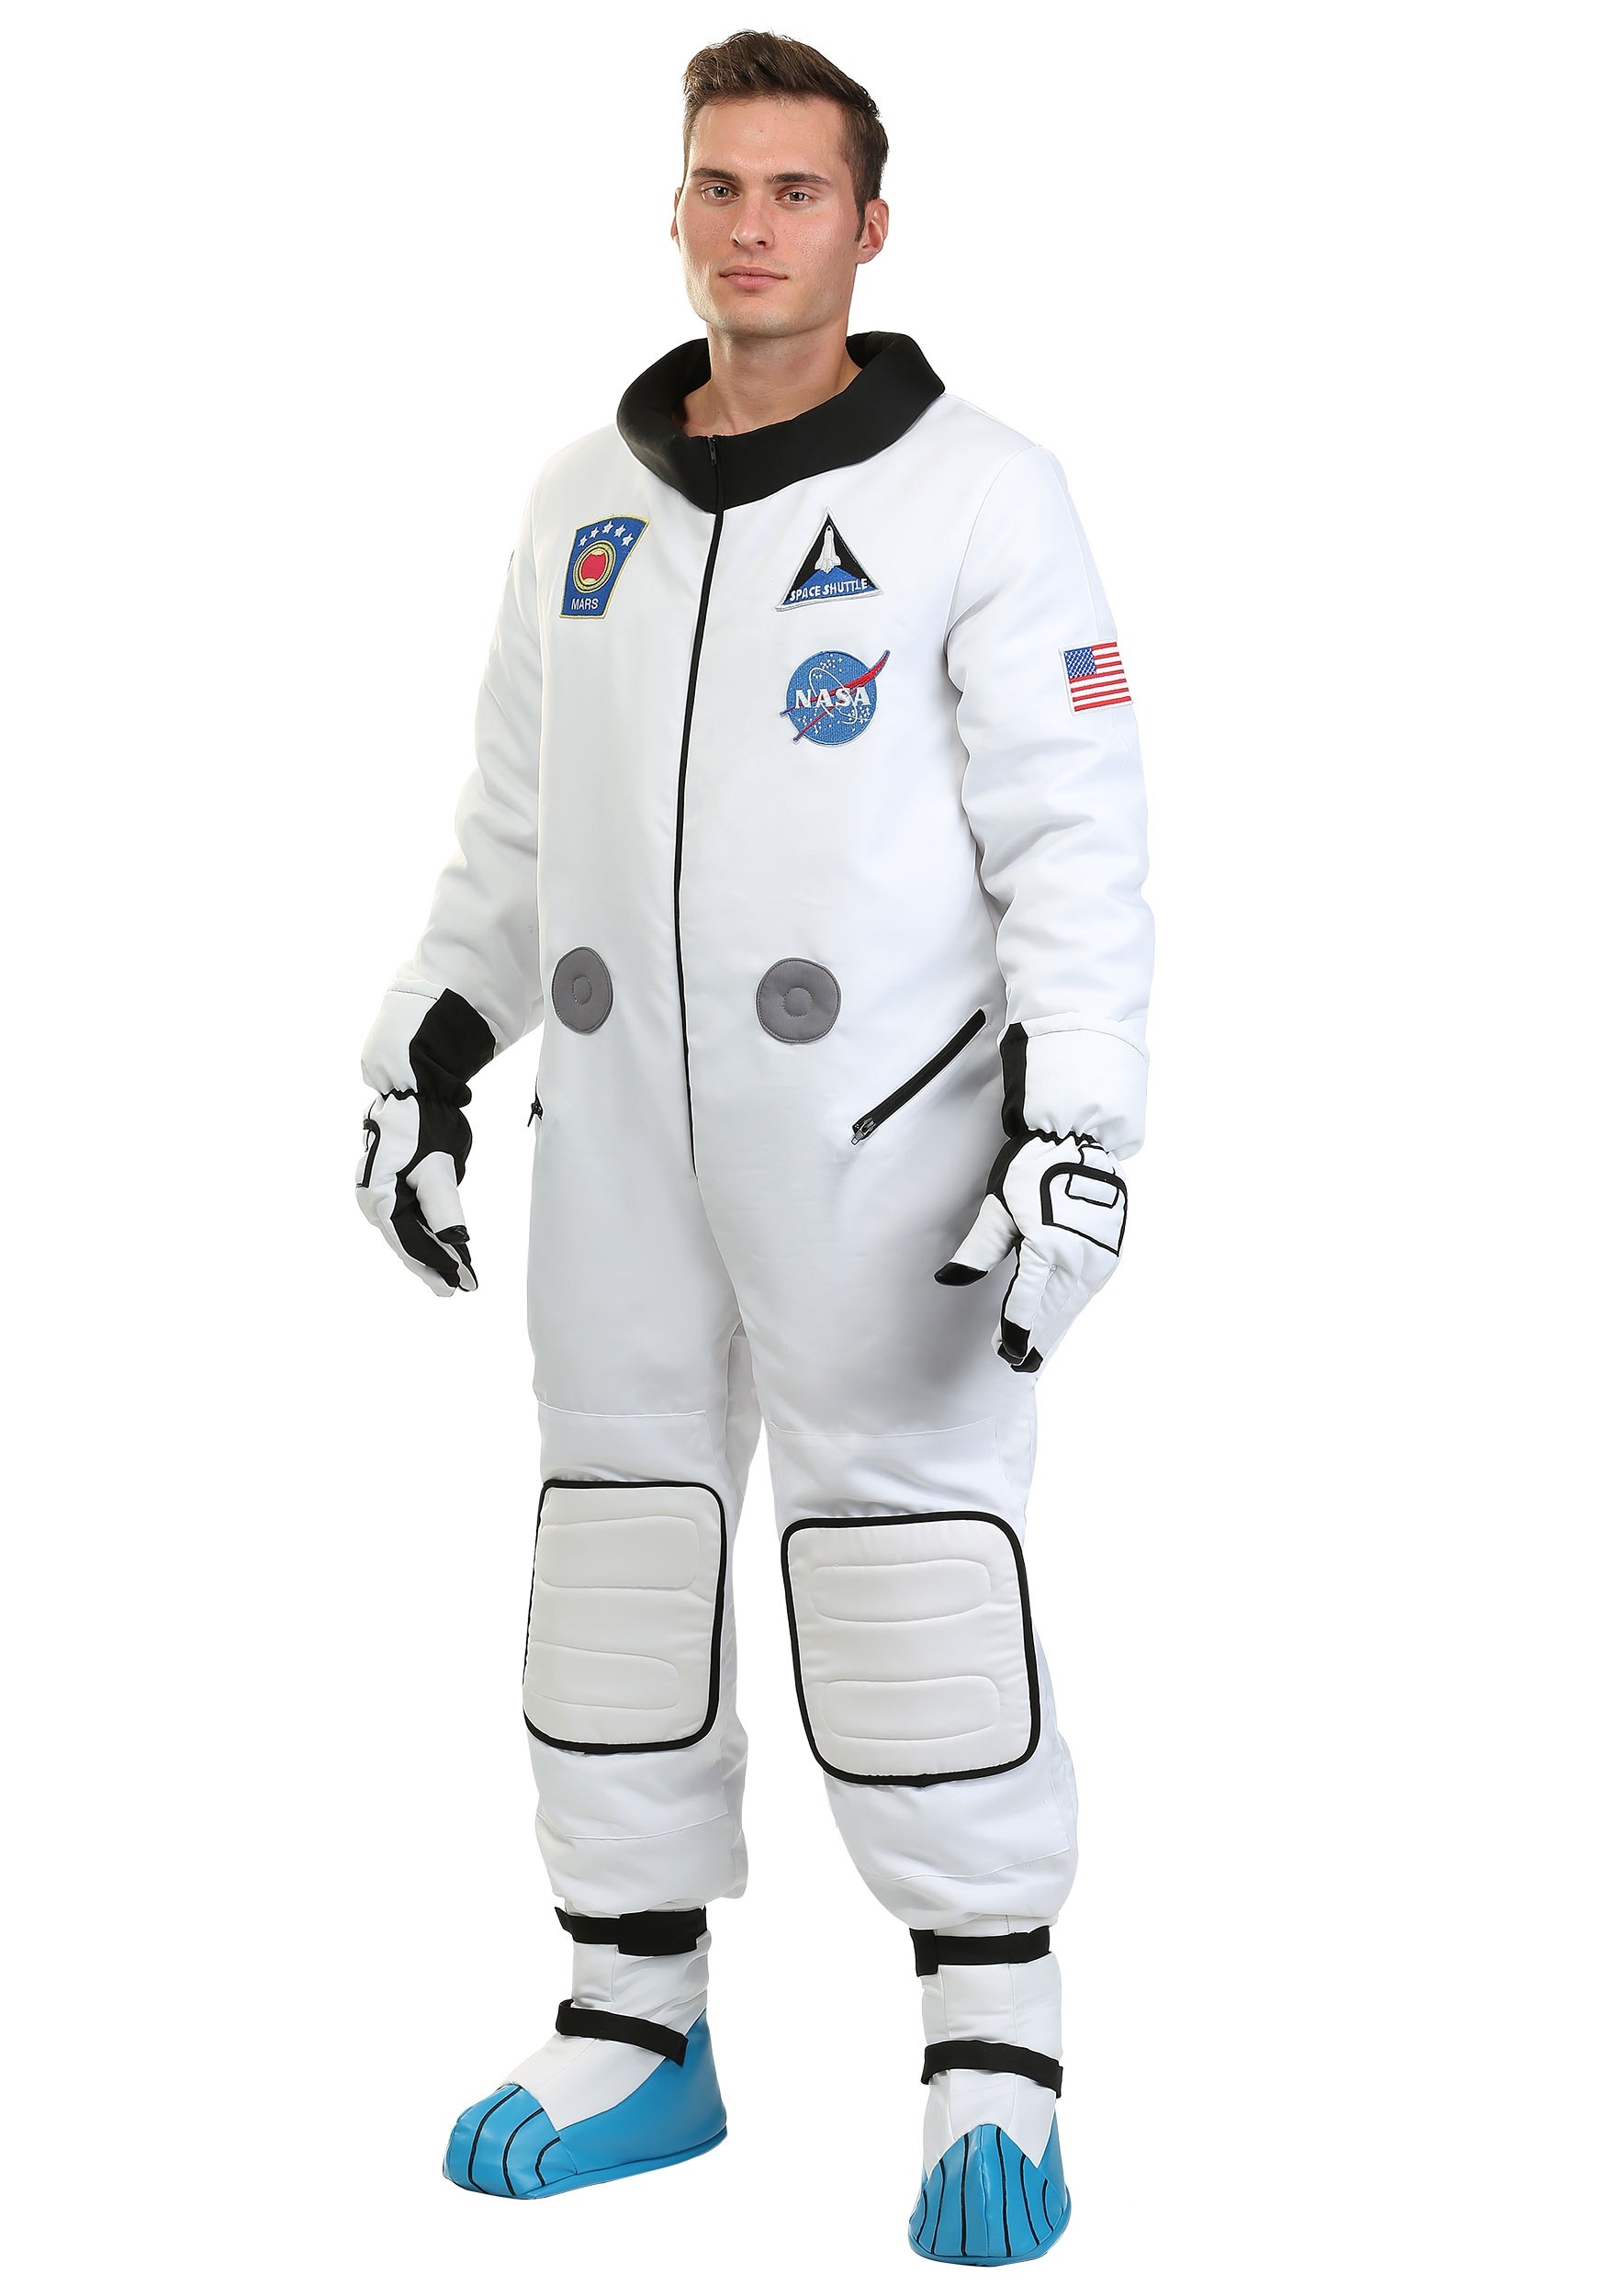 Deluxe Astronaut Costume For Men